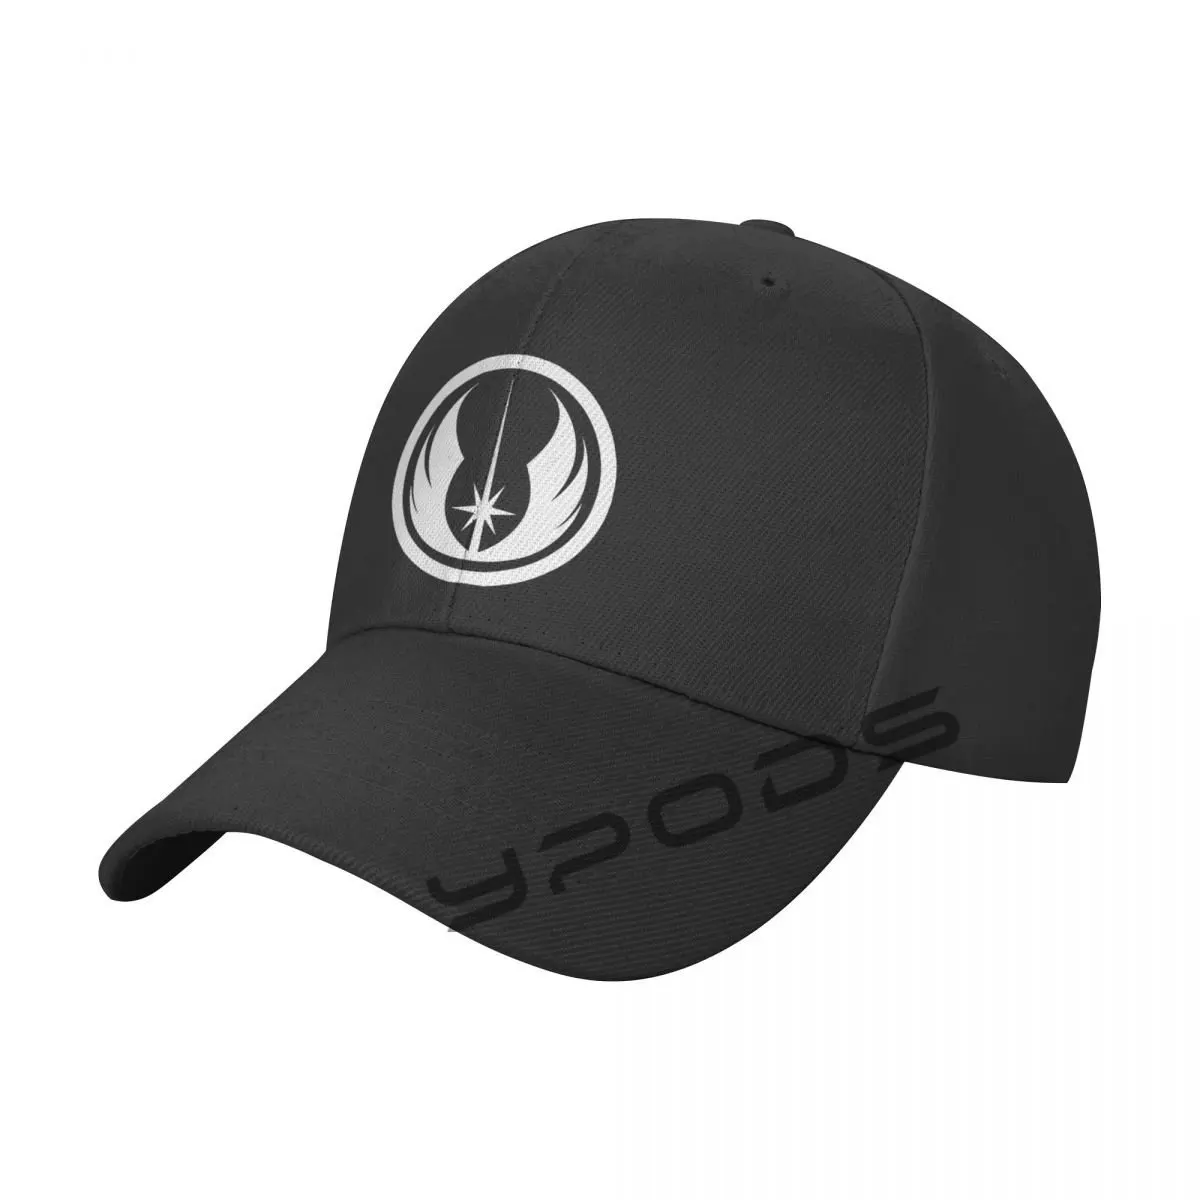 

New Jedi Order Emblem Men's Classic Baseball Cap Adjustable Buckle Closure Dad Hat Sports Cap